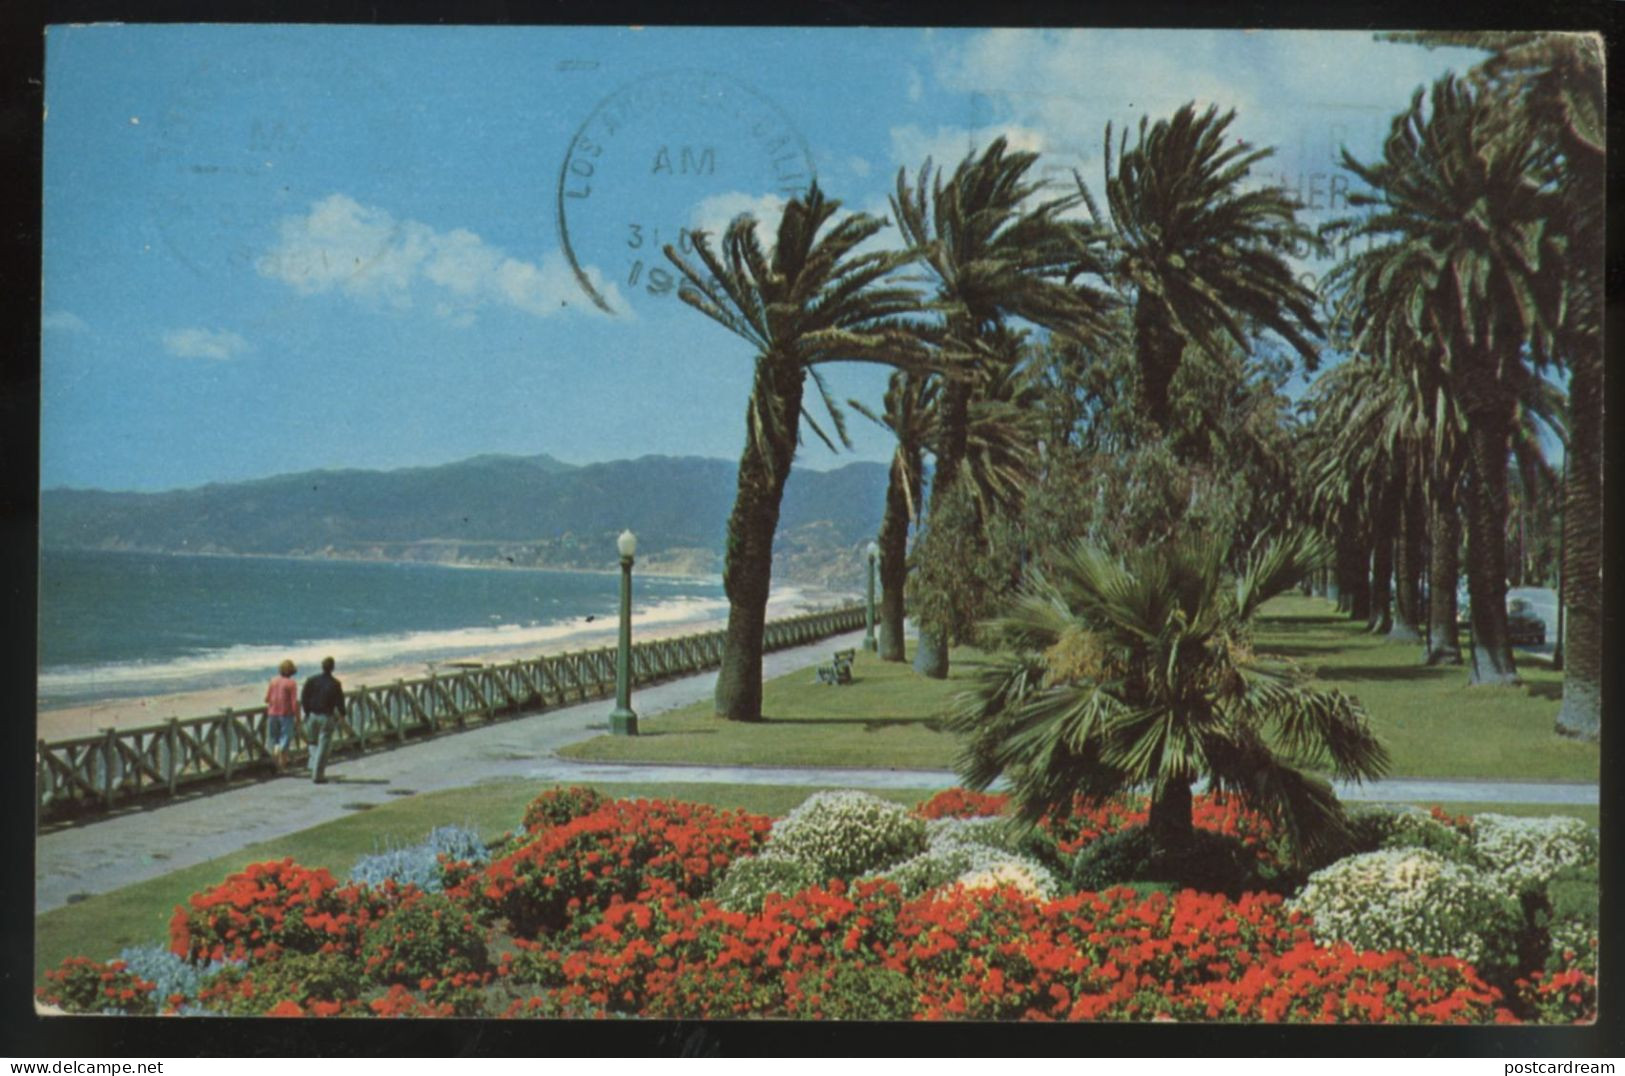 Palisades Park CA Santa Monica 1960s Postcard - Los Angeles